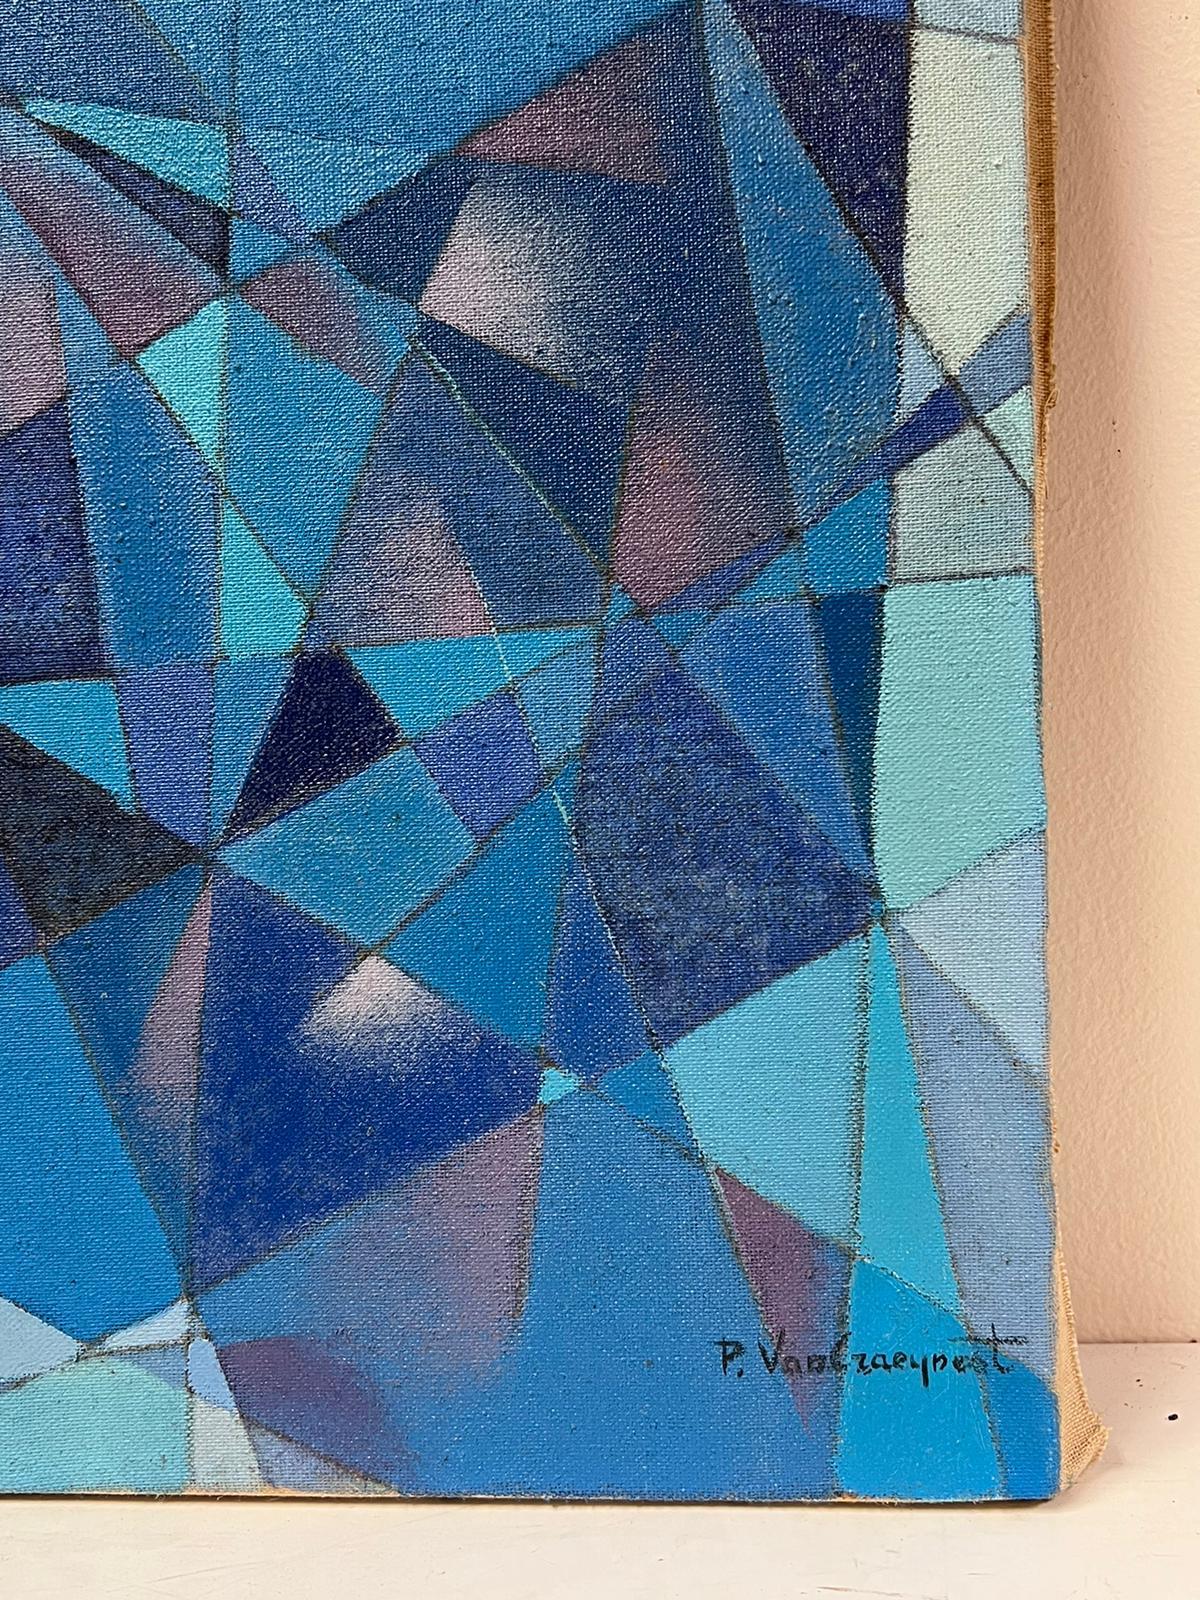 
Französische Schule, kubistischer Künstler um 1970
Öl auf Leinwand, ungerahmt
Leinwand: 20 x 16 Zoll
Provenienz: Privatsammlung
Zustand: ein paar Flecken auf der Oberfläche, aber insgesamt guter und gesunder Zustand